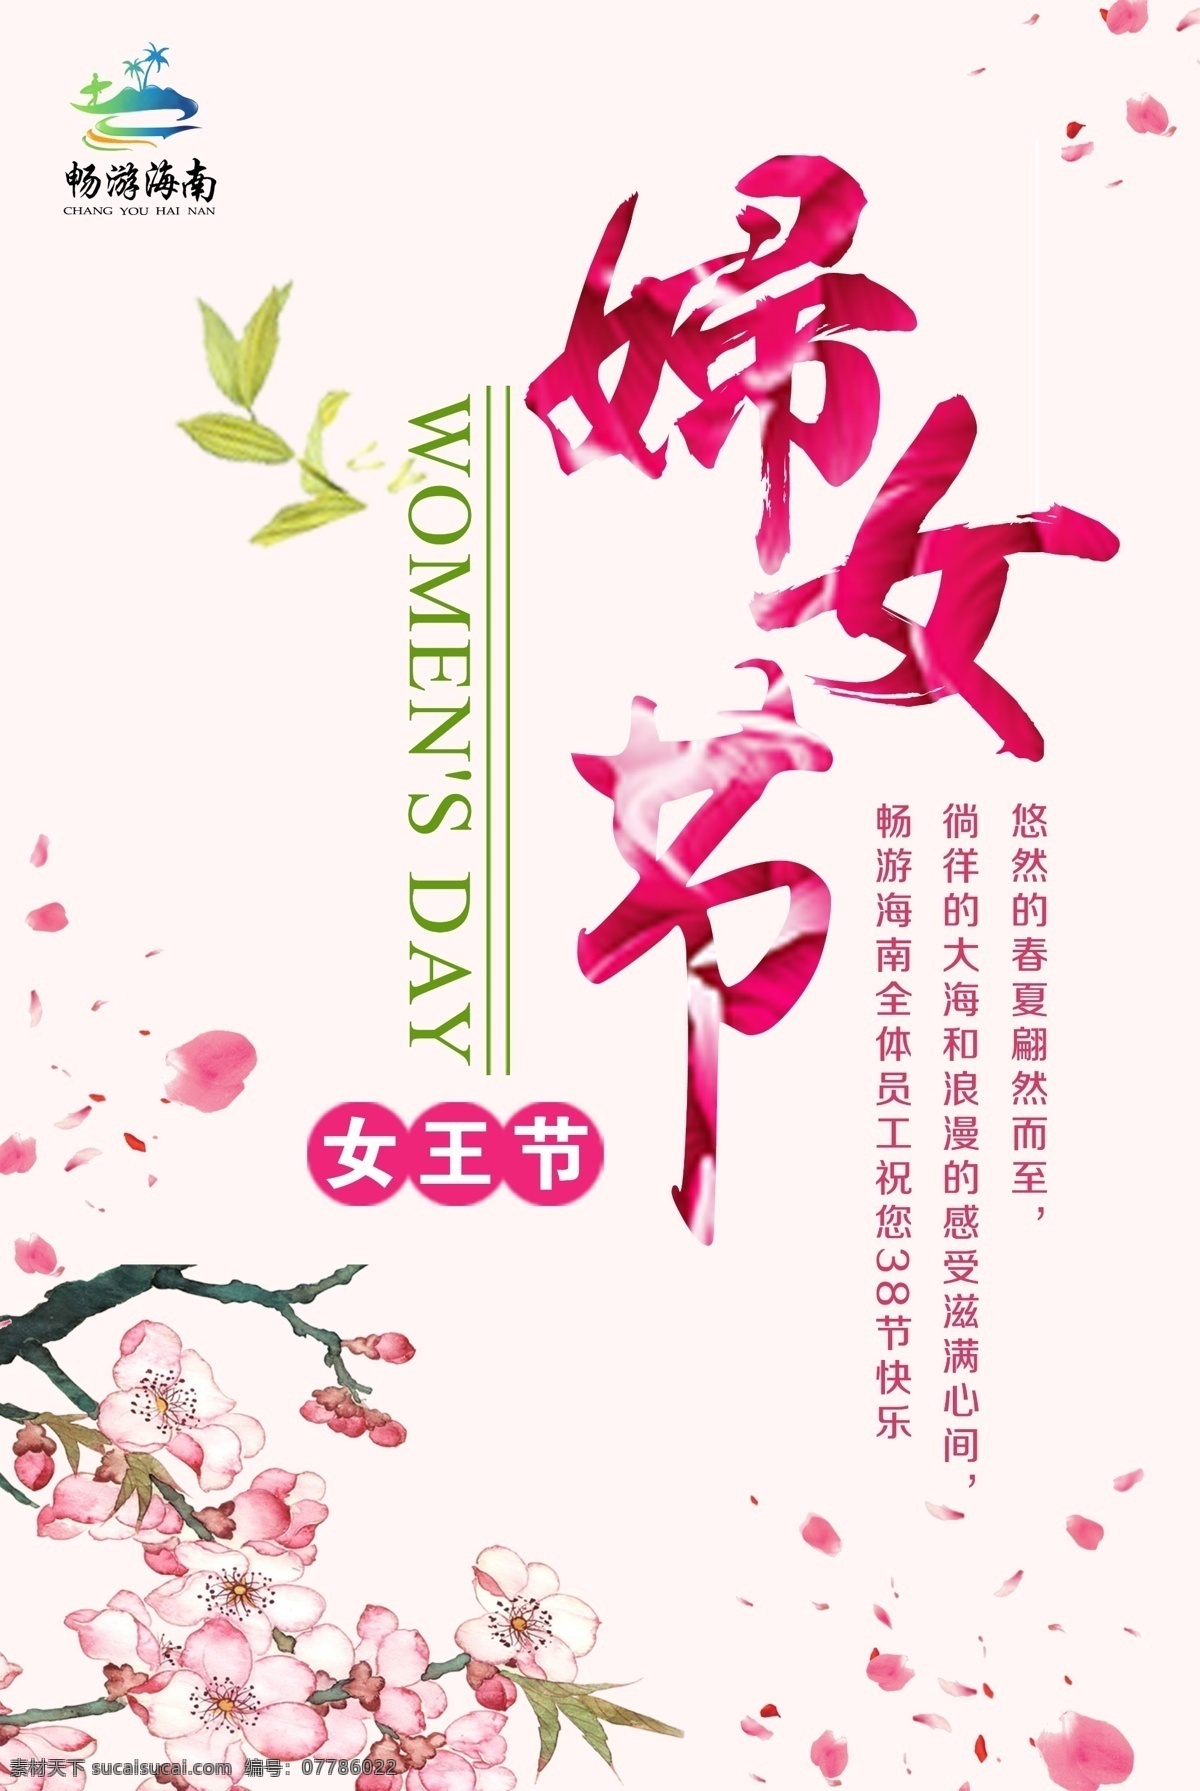 3.8妇女节 畅游海南 女王节 女生节 中国节假日 妇女节 粉红色 樱花 艺术字